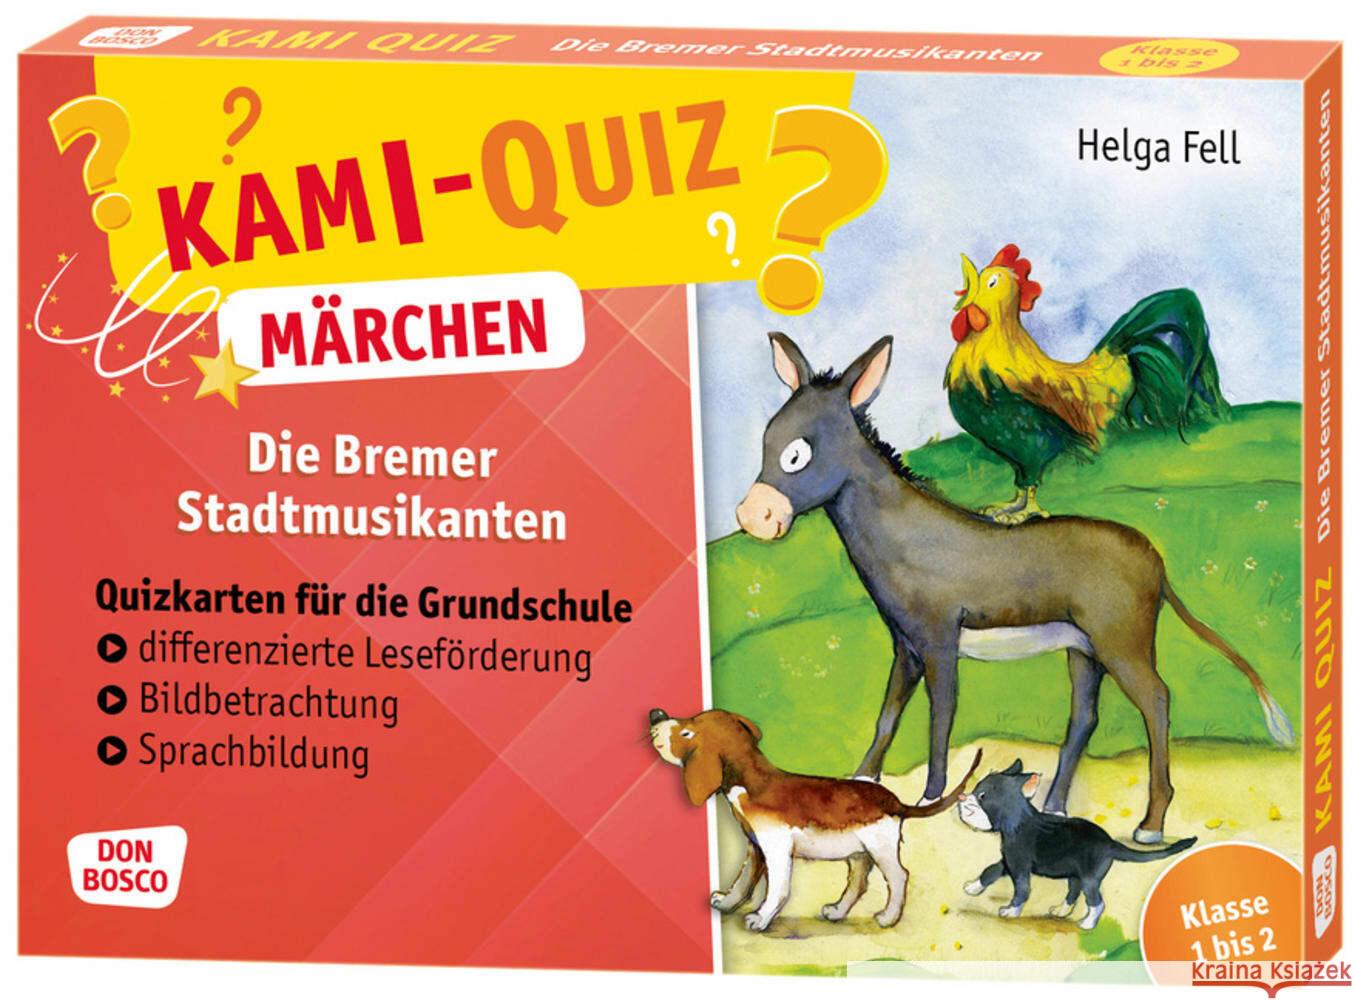 Kami-Quiz Märchen: Die Bremer Stadtmusikanten Fell, Helga 4260179516856